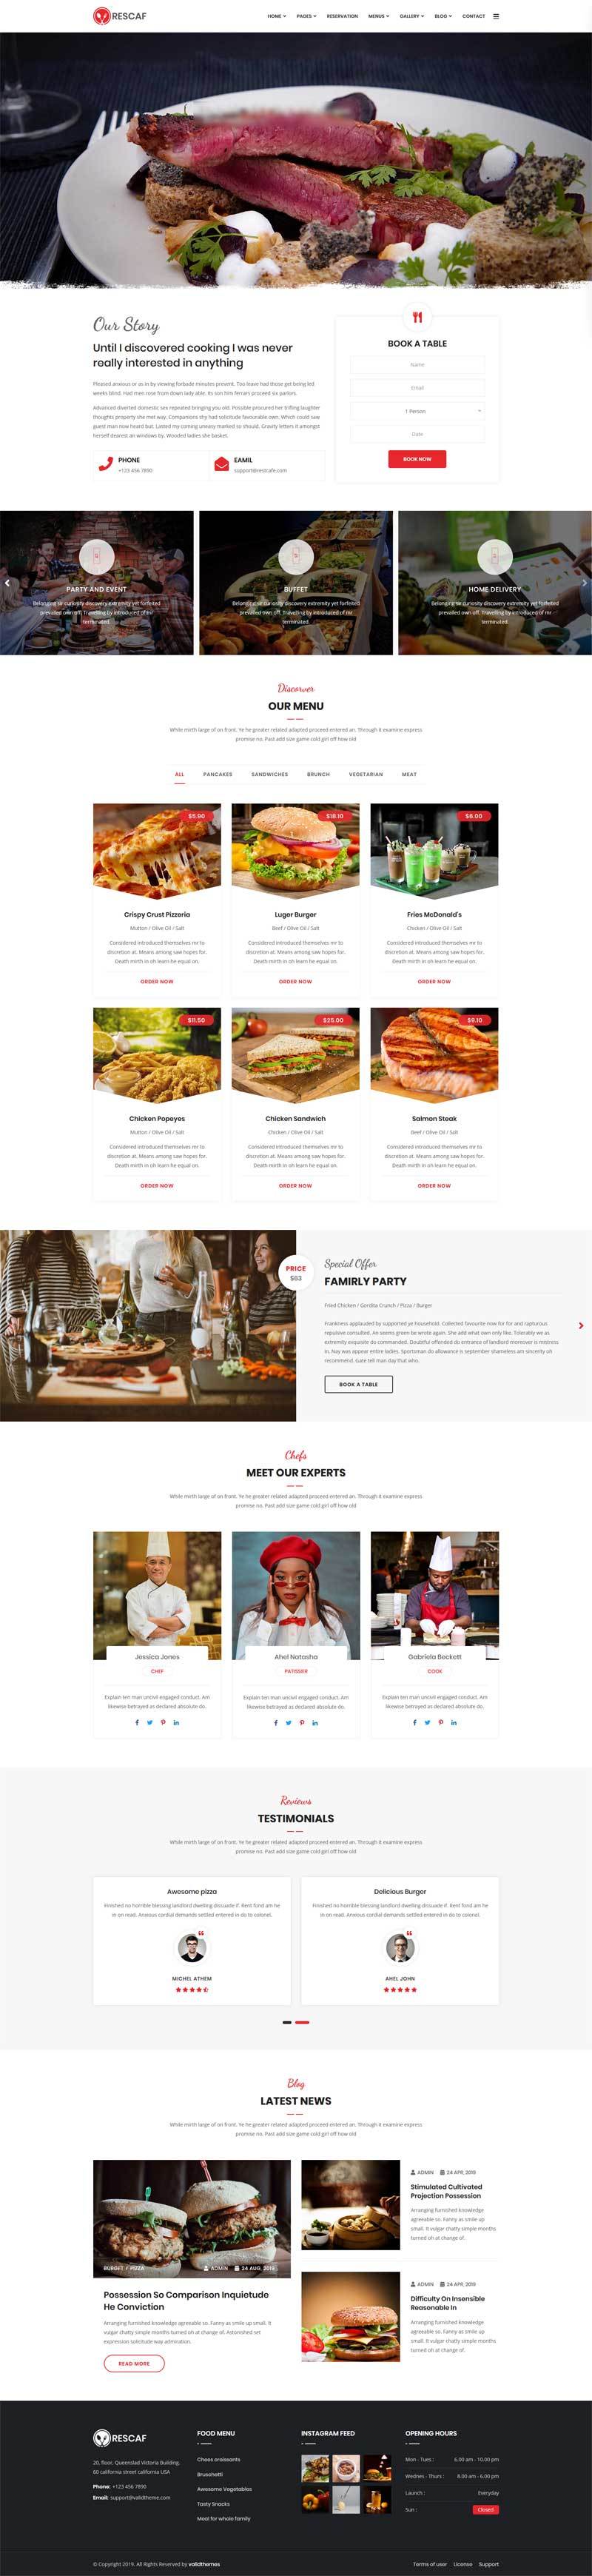 咖啡厅餐饮行业网站响应式HTML5模板6127